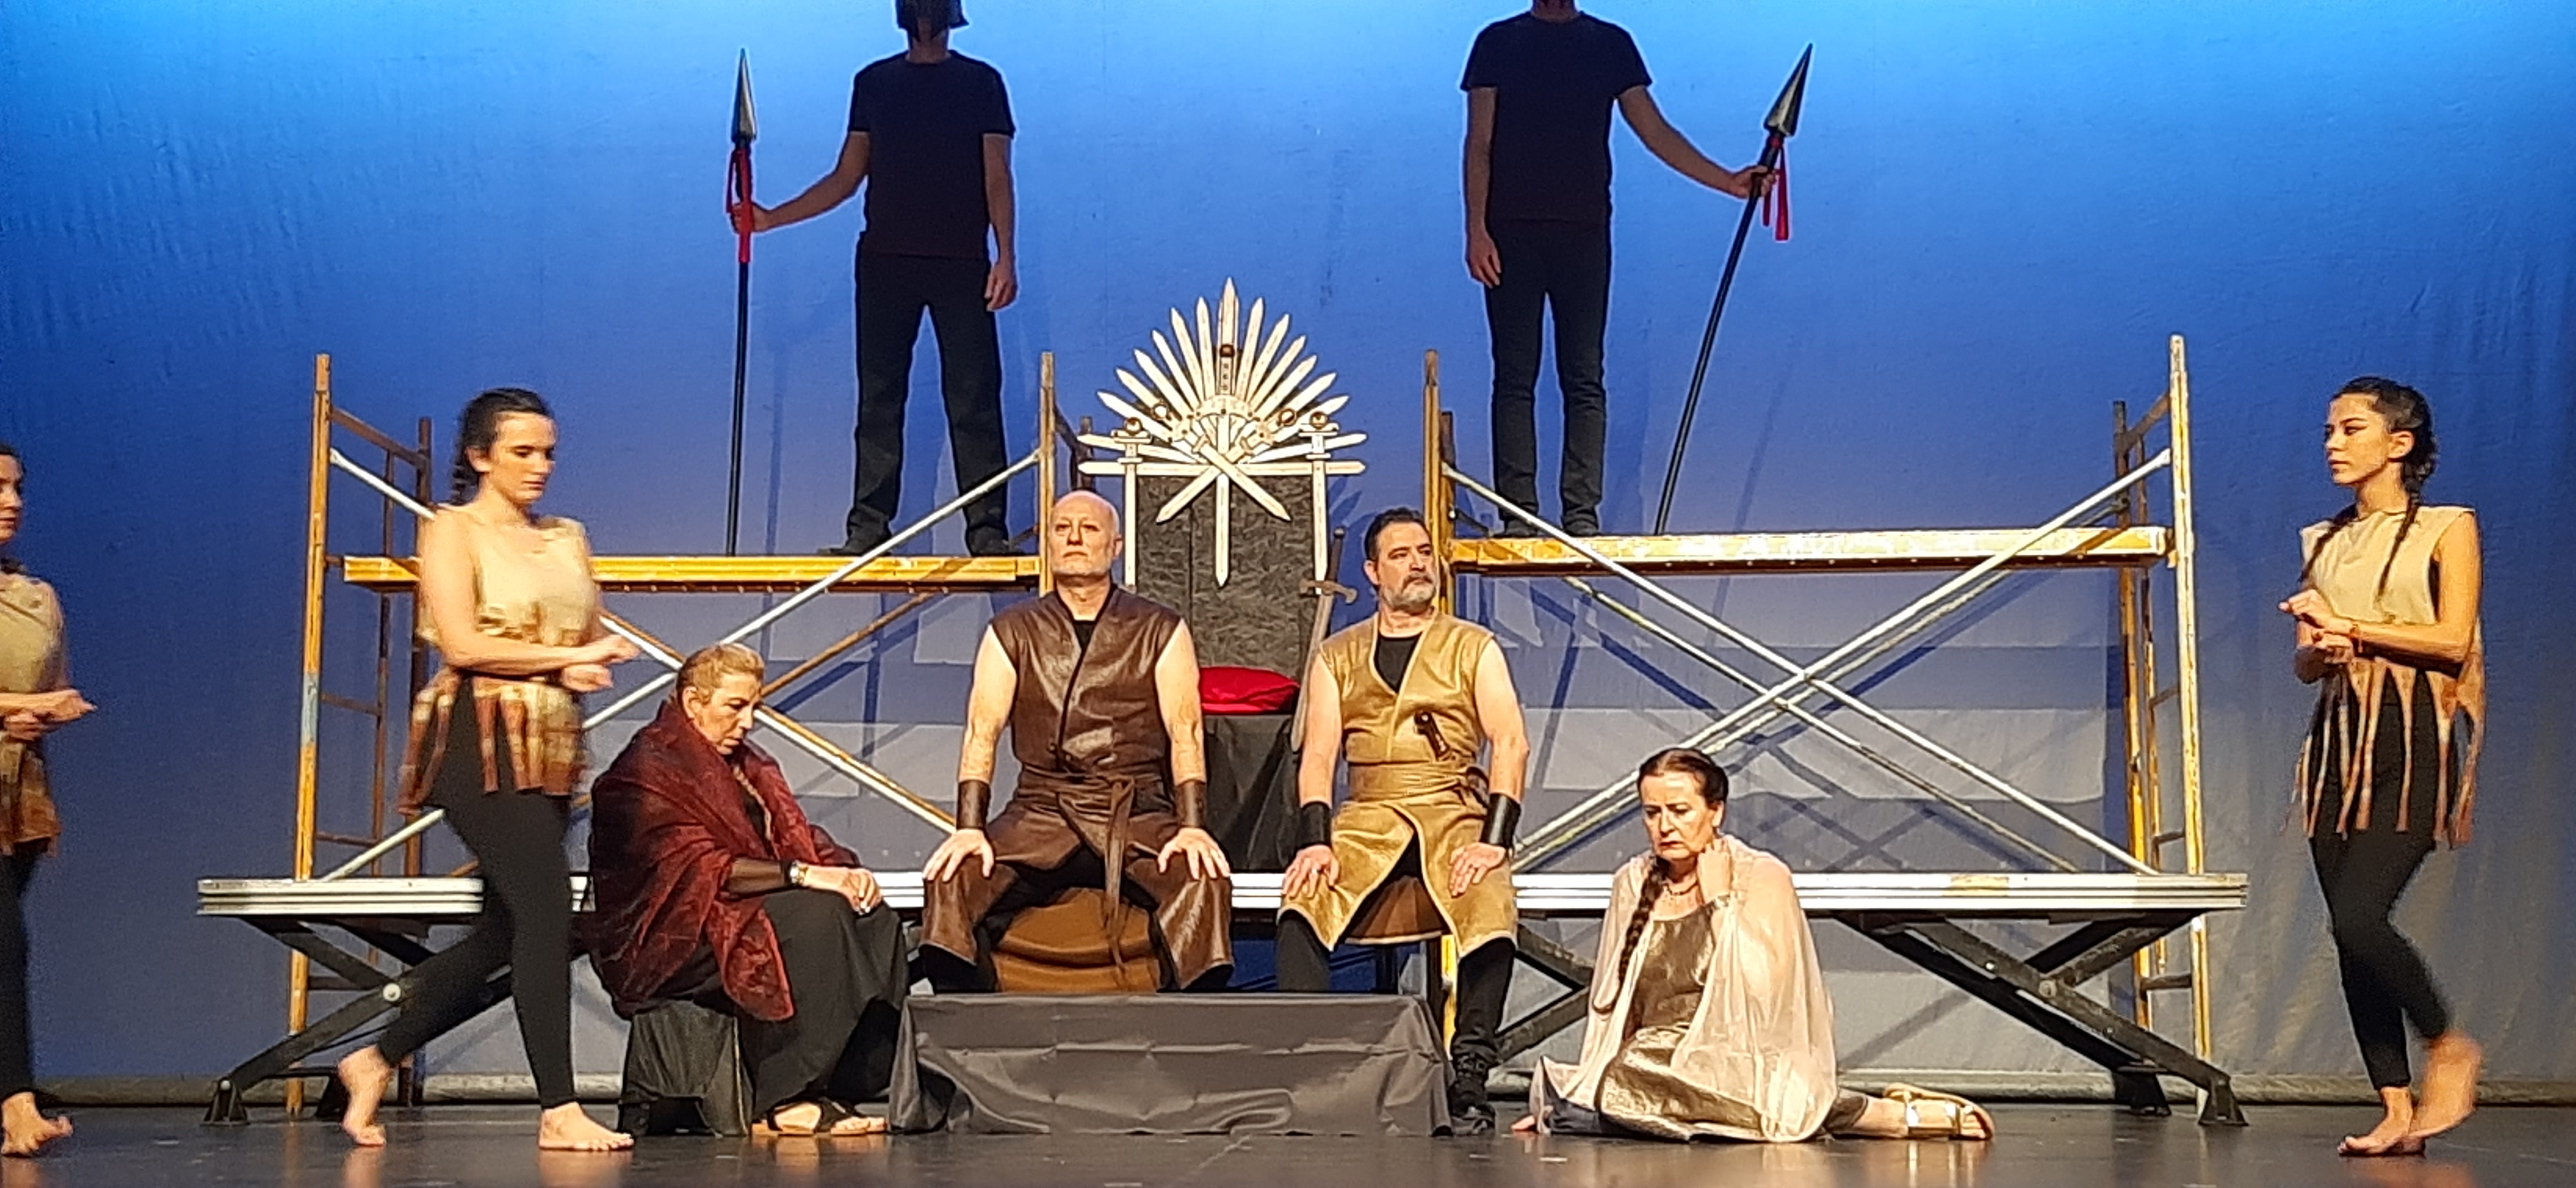 TEATRE FALLER - Borrull-Túria ens transporta a Troia amb 'La Reina assassina'